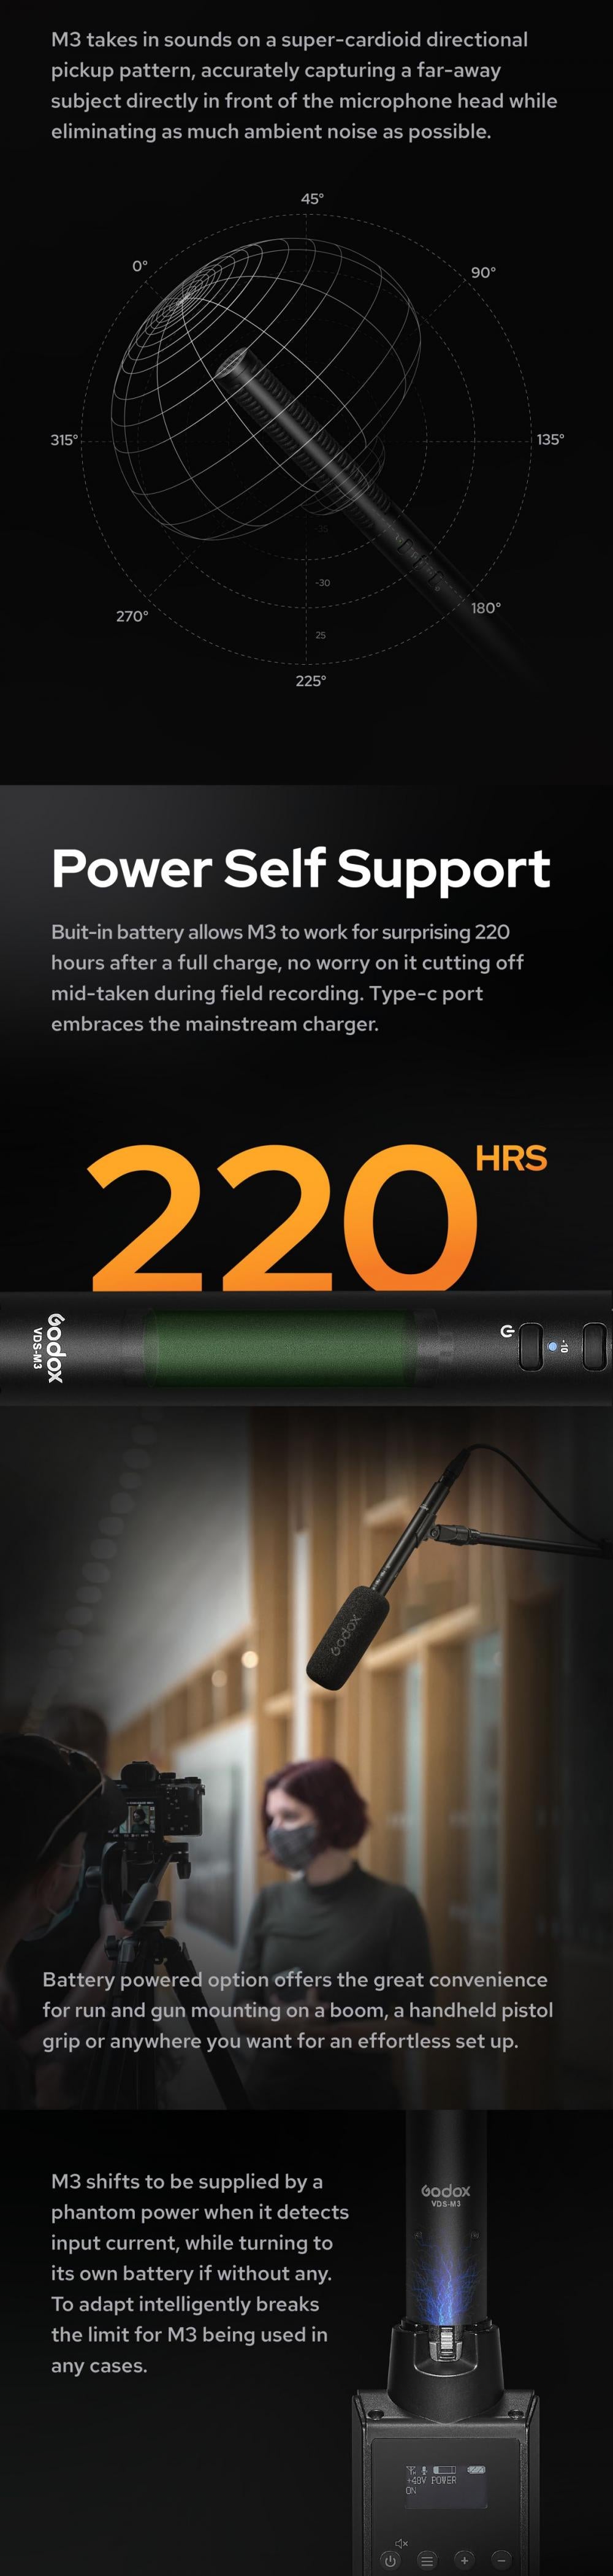 Godox-VDS-M3-Hypercardioid-Condenser-Shotgun-Microphone-2